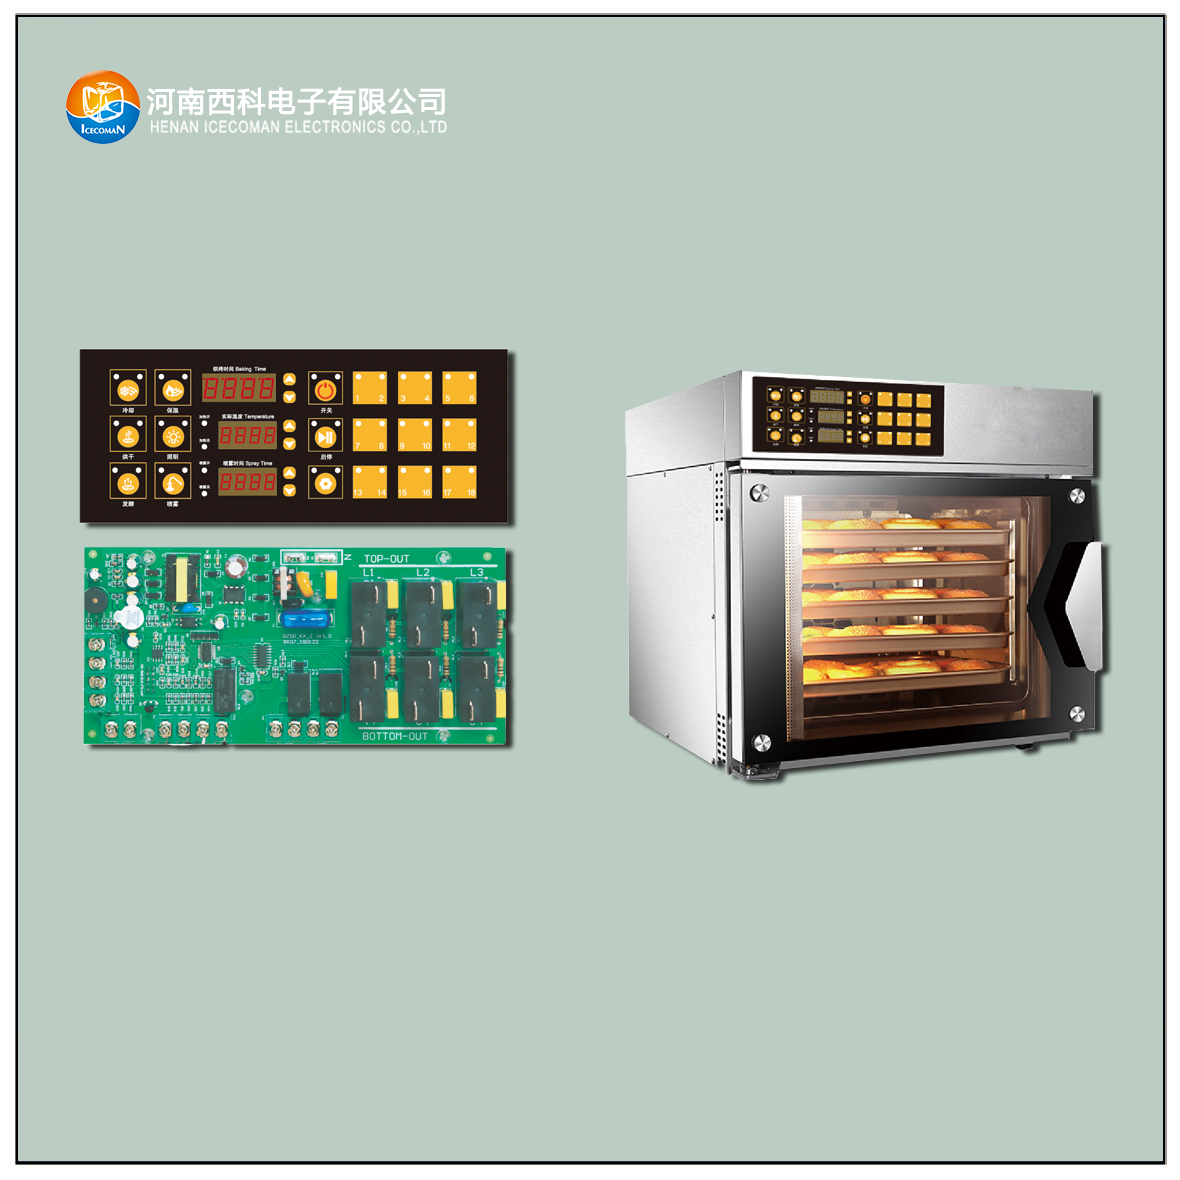 HPKX-SMG-B 烘焙烤箱控制器